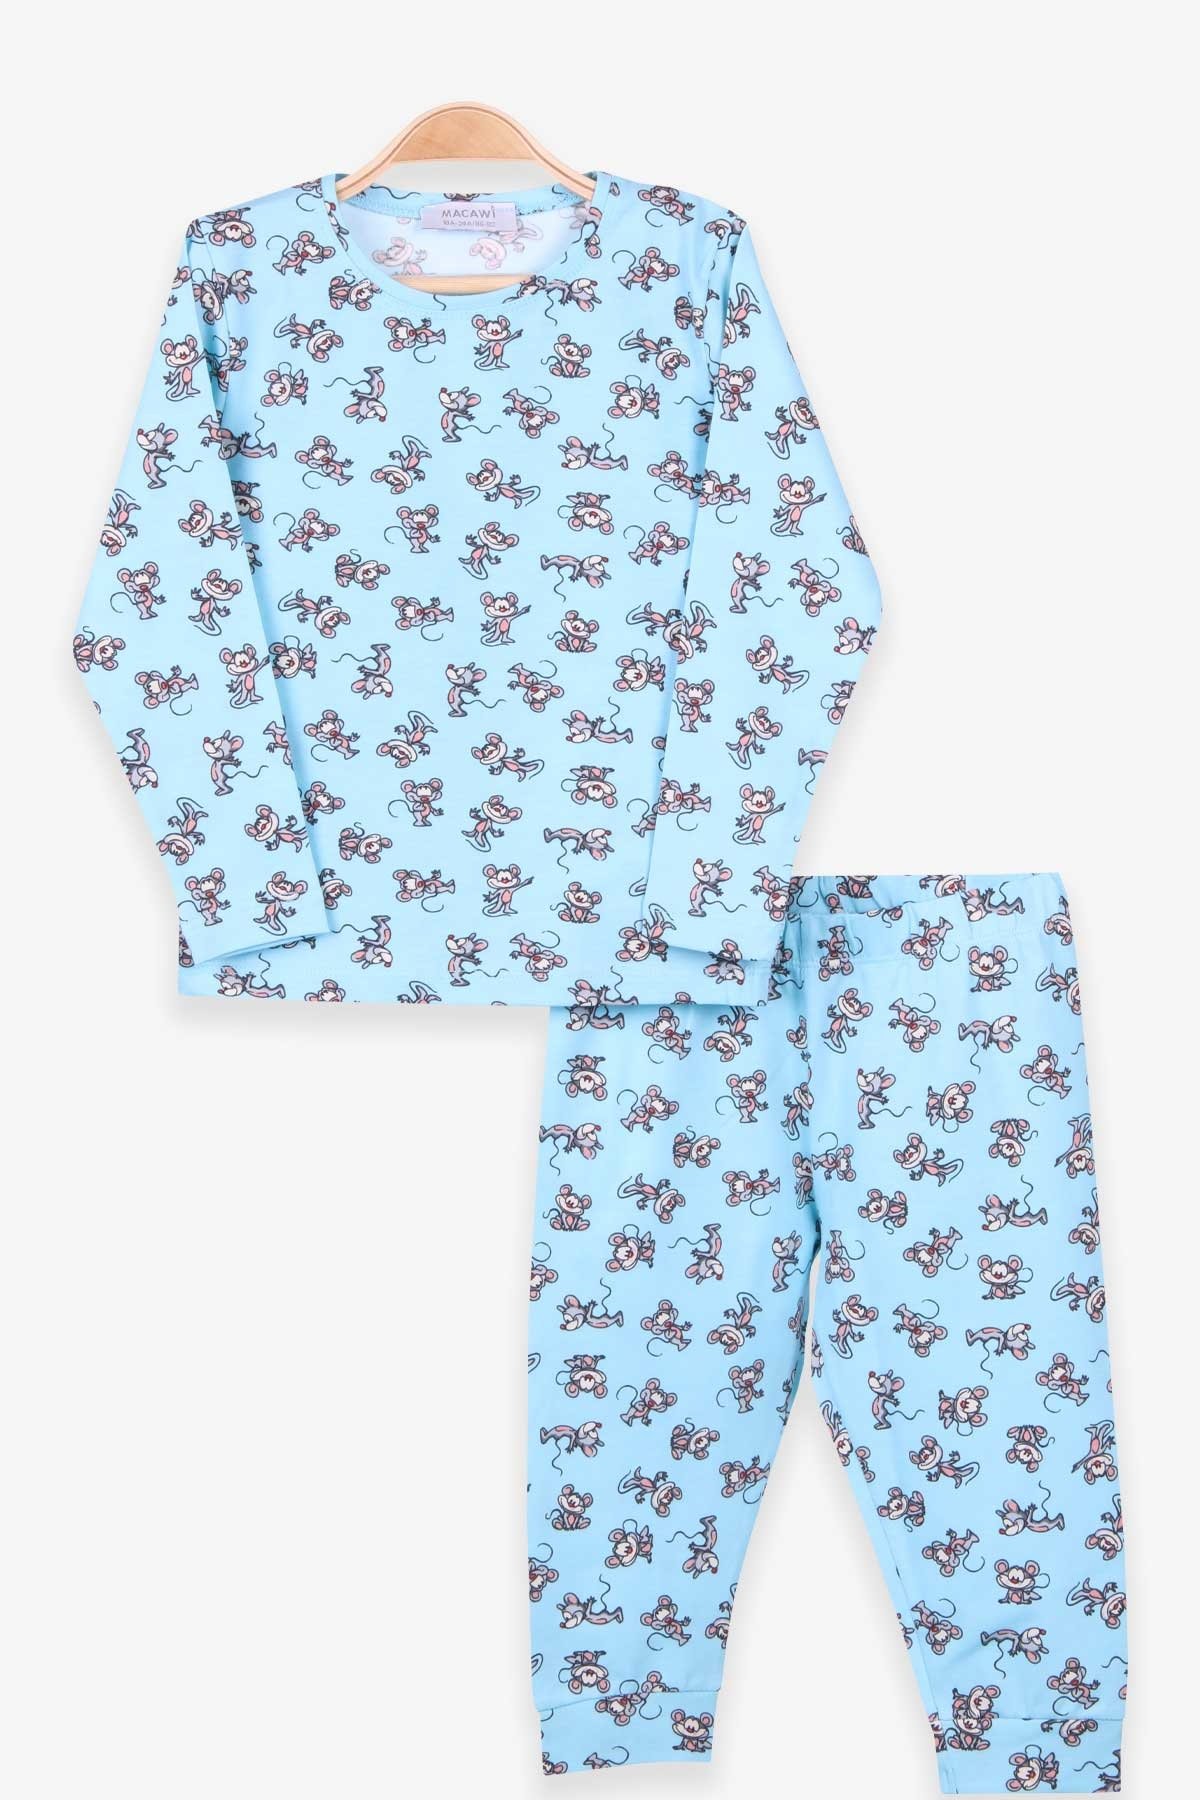 Erkek Çocuk Pijama Takımı Sevimli Fare Açık Mavi 1.5-2 Yaş - Yumuşak Kumaş  | Breeze